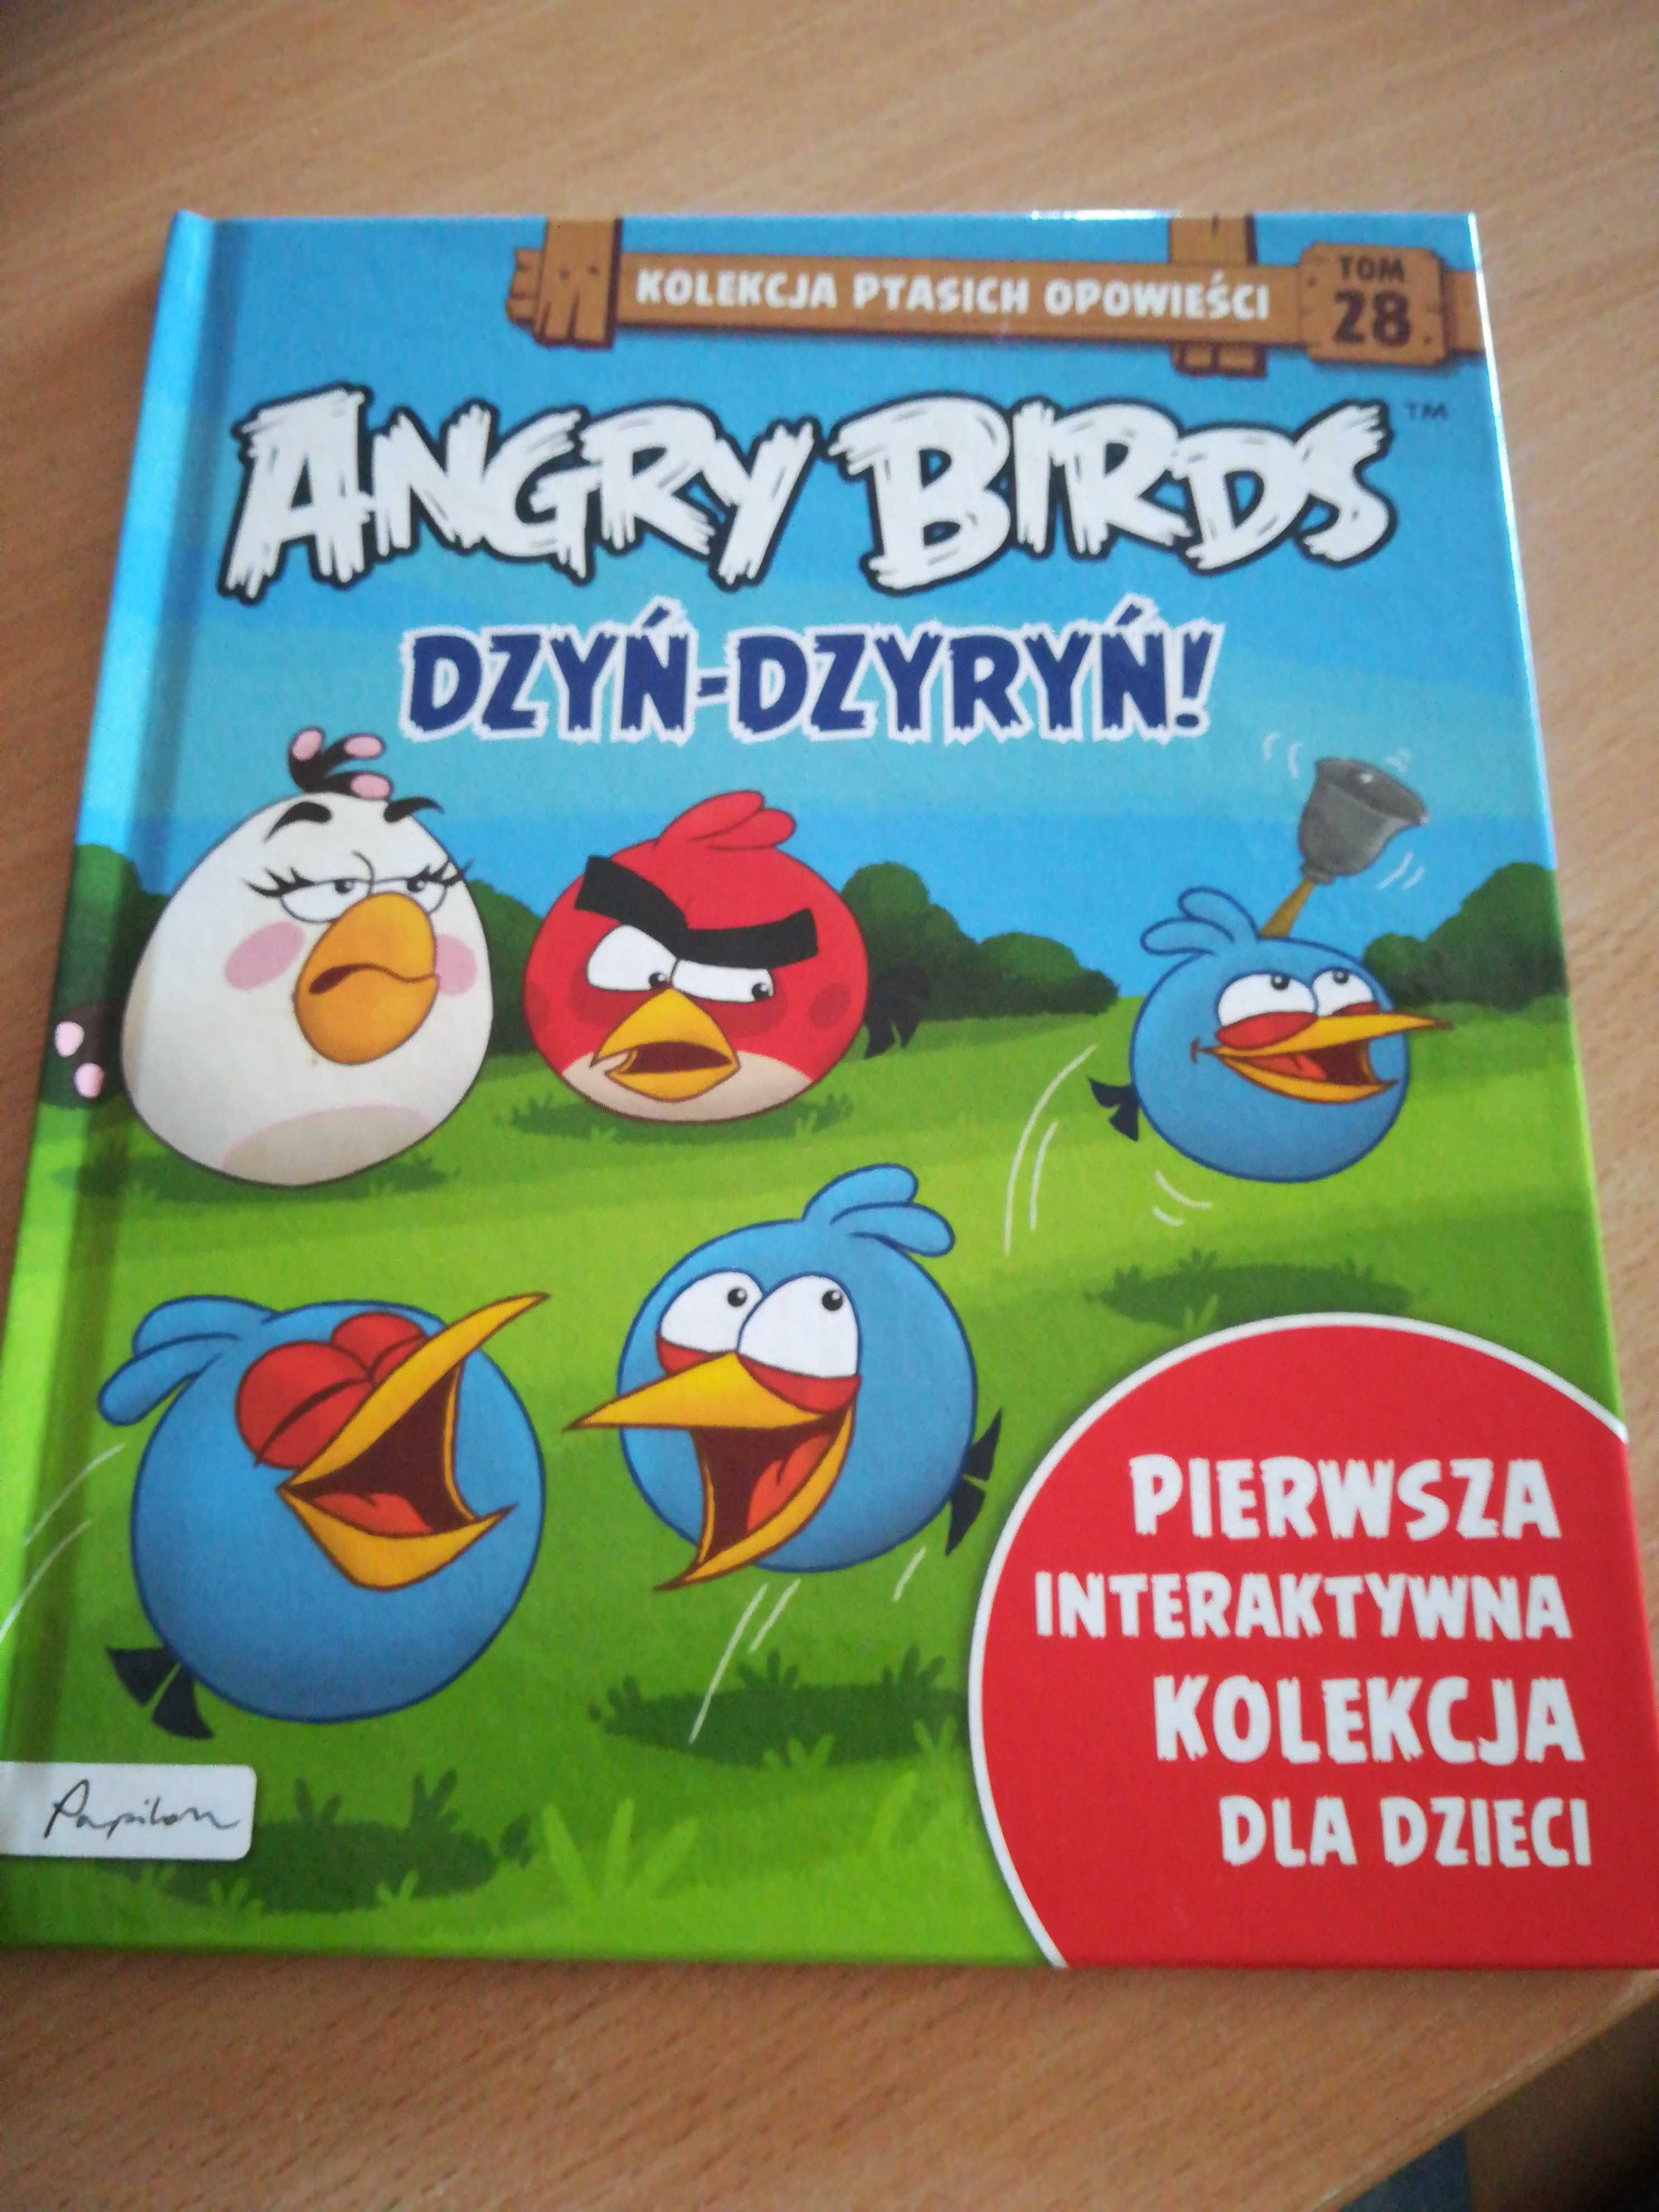 Kolekcja ptasich opowieści. Angry Birds. Dzyń - dzyryń T. 28.